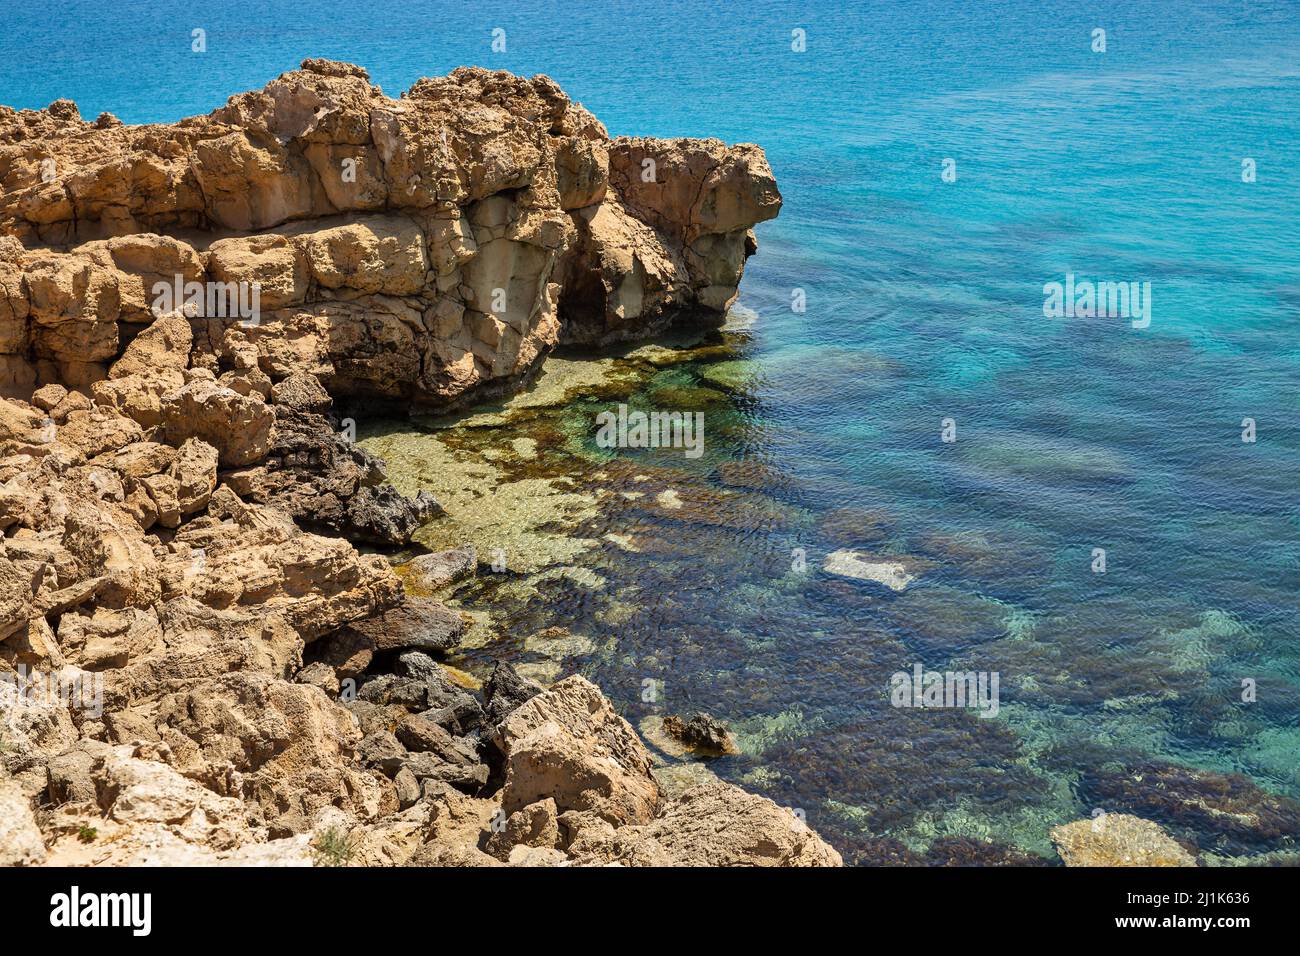 Seascape Cape Greco peninsula park, Chipre. Es una península montañosa con un parque nacional, caminos rocosos, una laguna turquesa y un puente de piedra natural Foto de stock